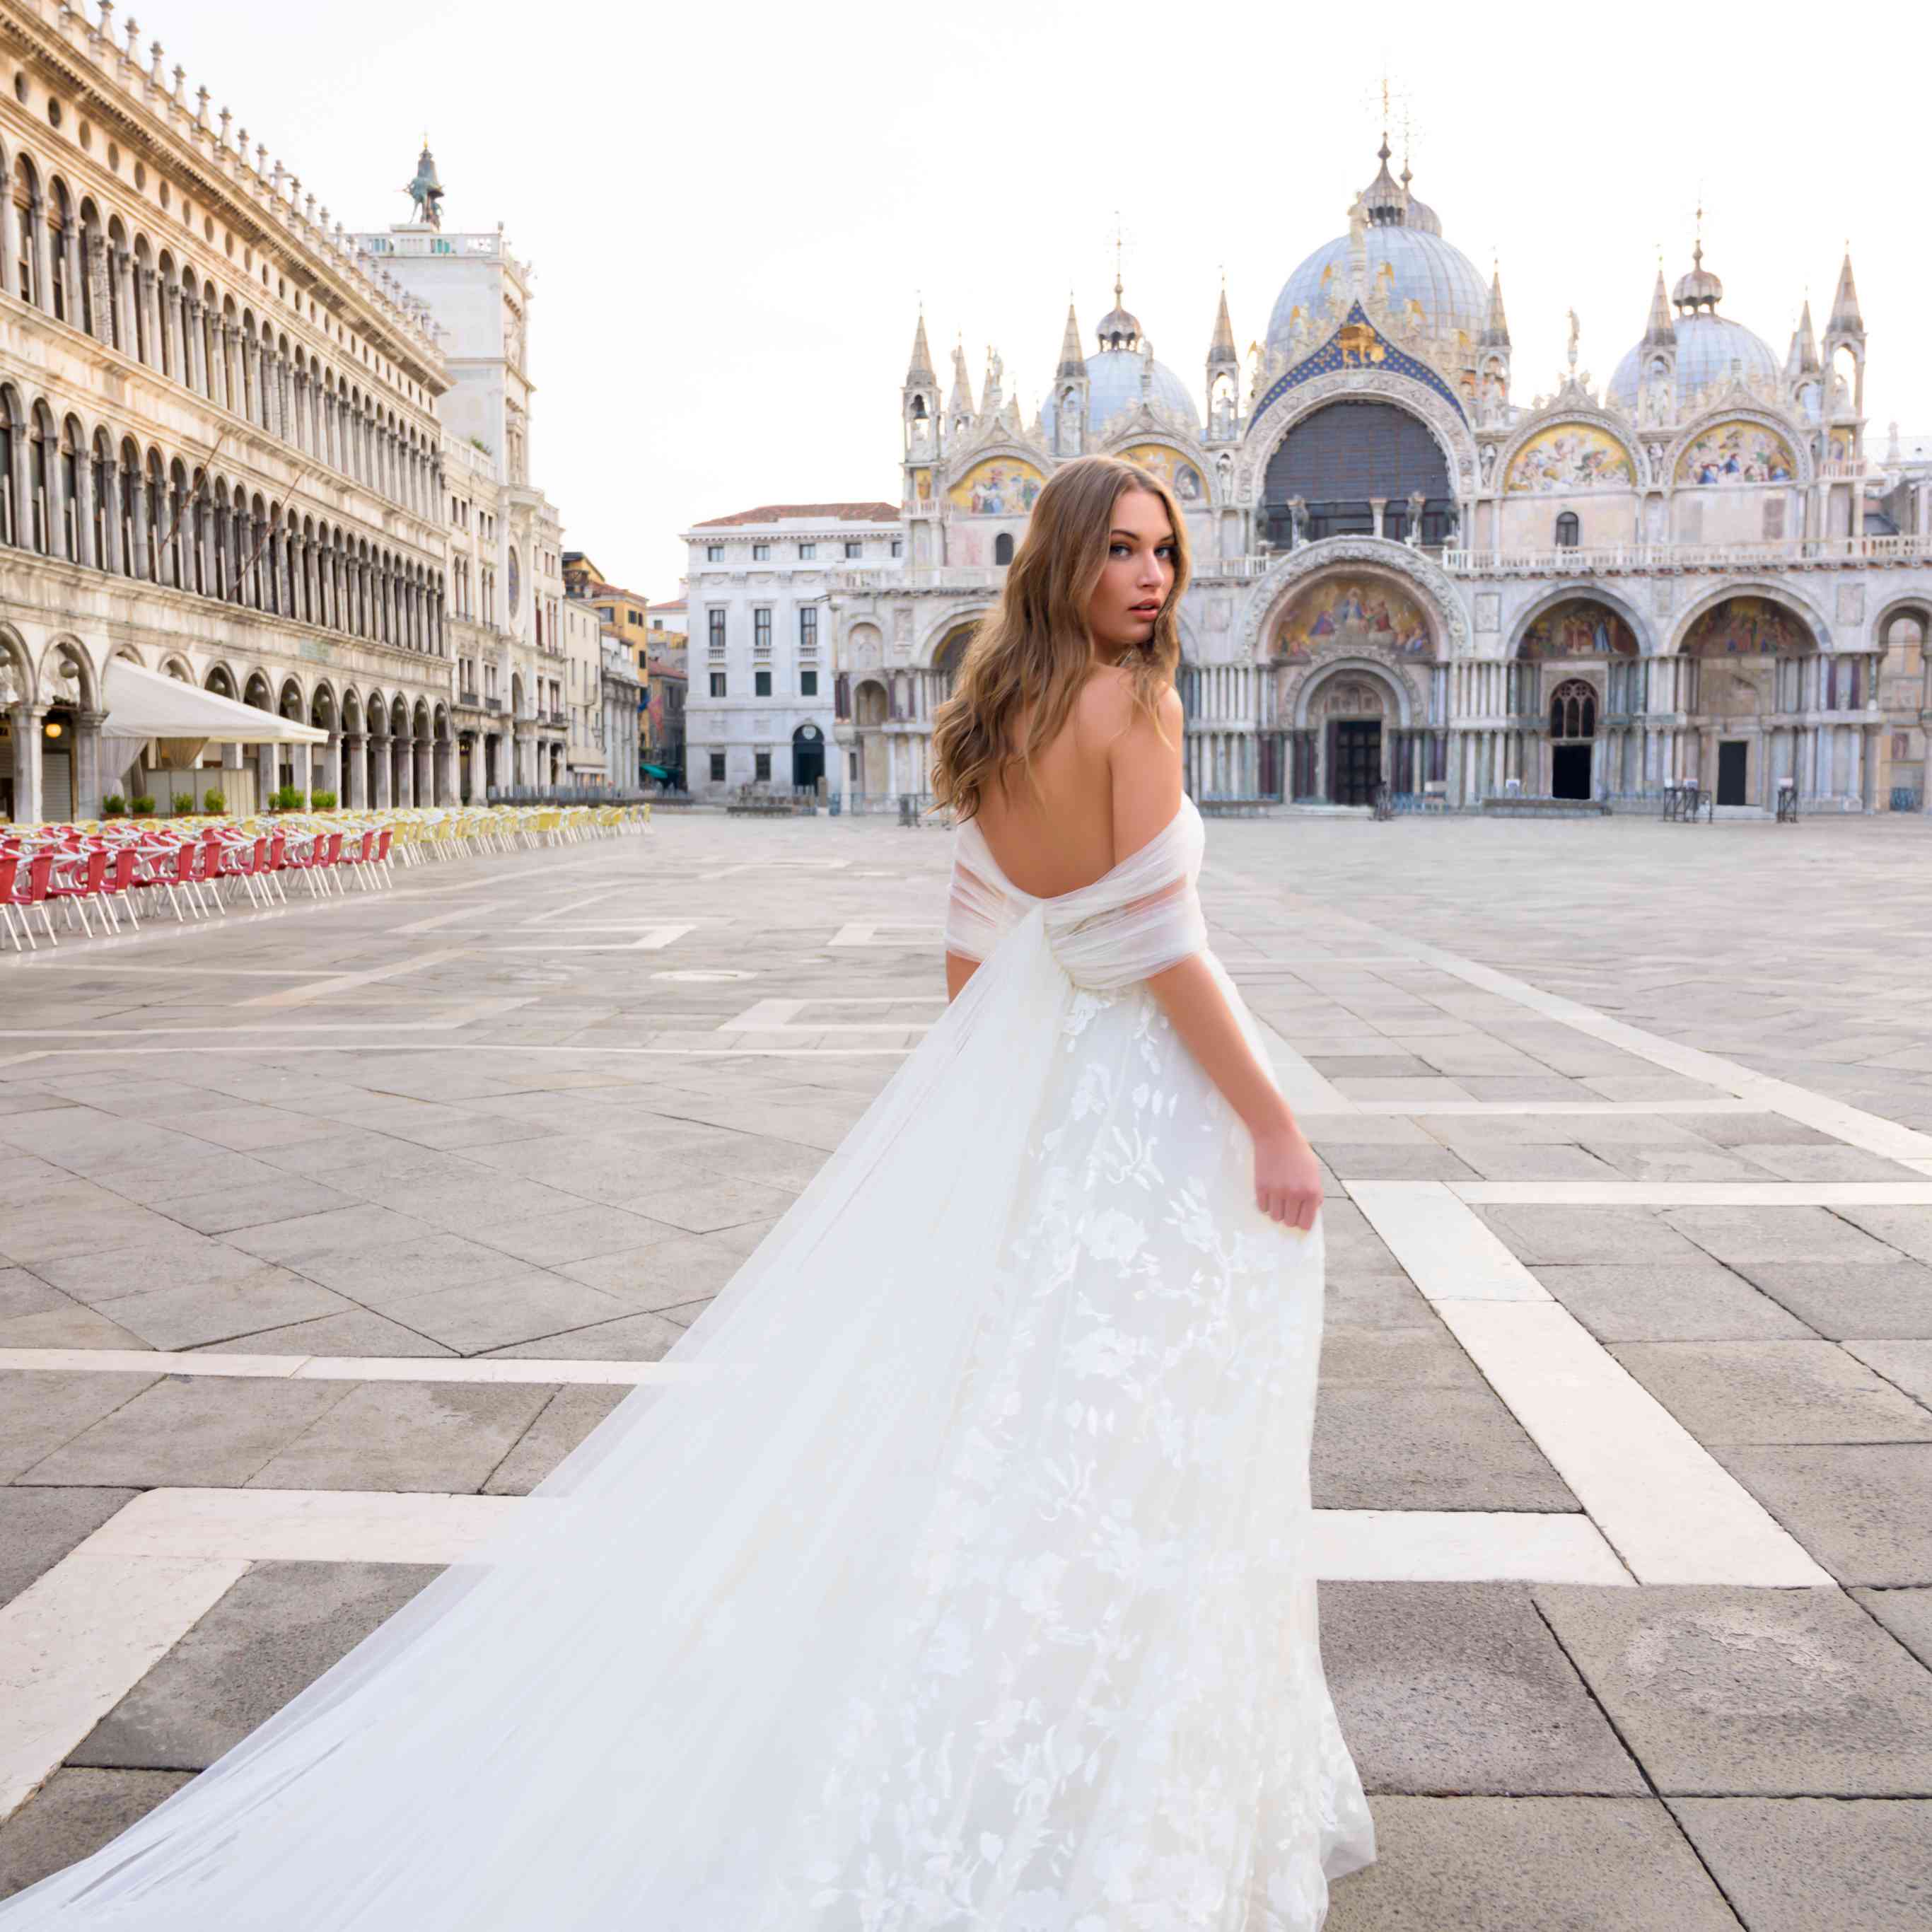 Будьте в тренде! образ невесты 2021: самые модные платья, аксессуары, макияж и прически